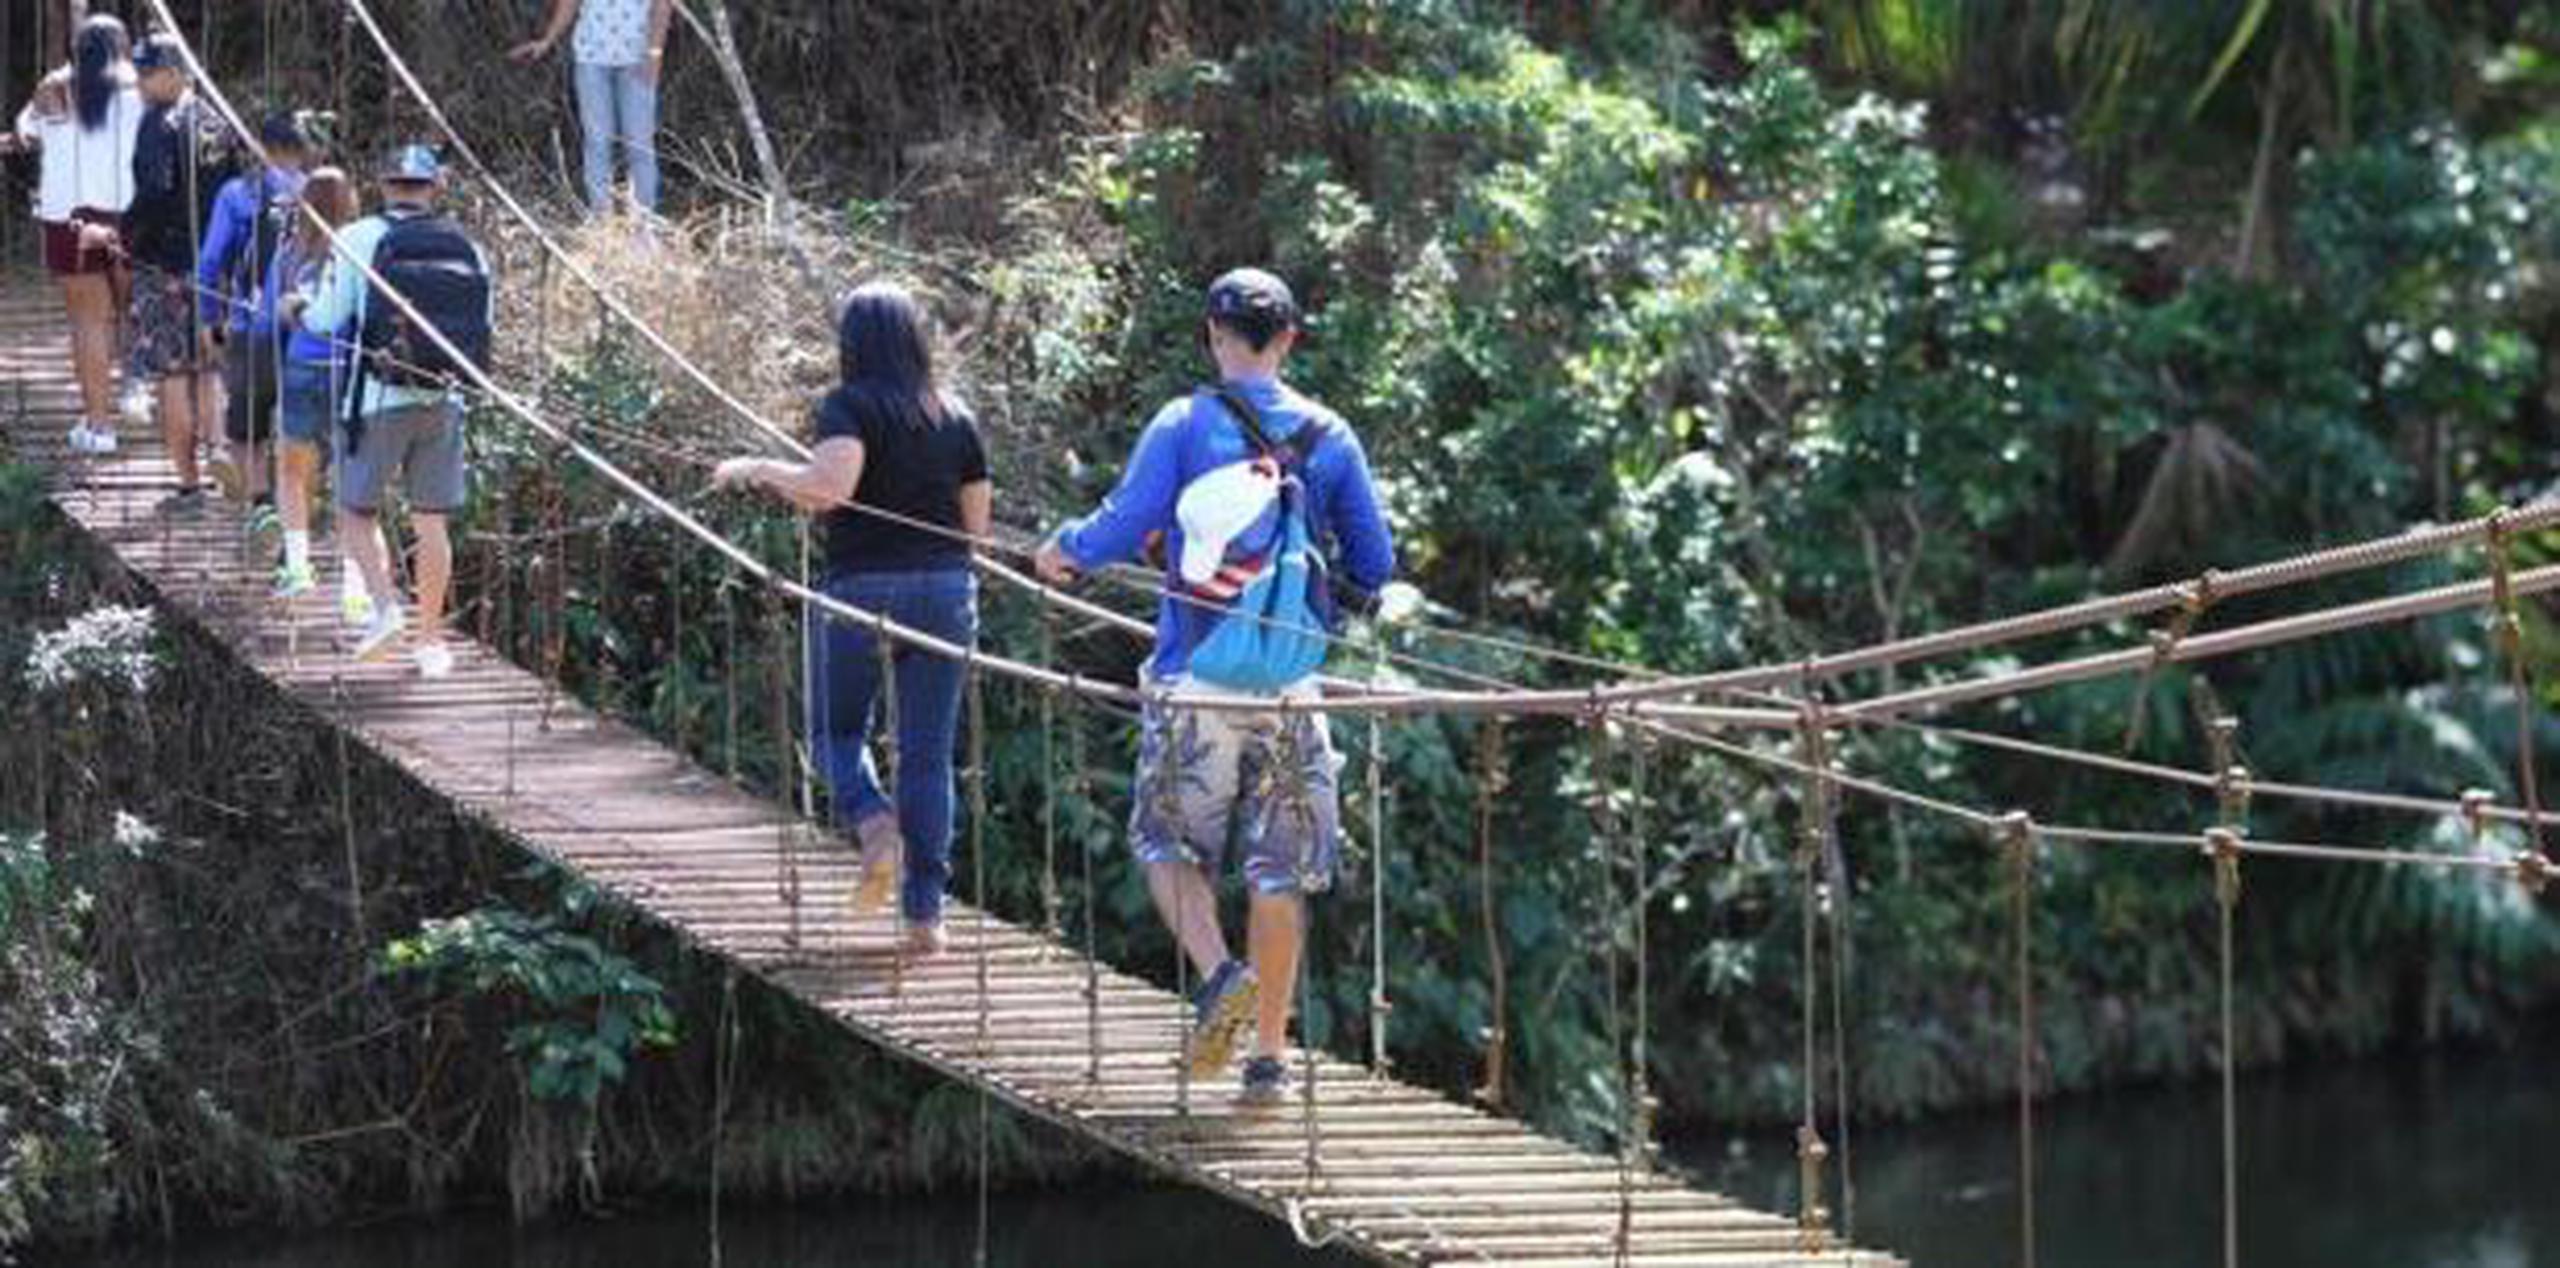 Para continuar con el paseo, el visitante puede llegar al Puente Hamaca que cruza el lago Garzas, en una experiencia repleta de emociones y pura adrenalina. (Archivo)